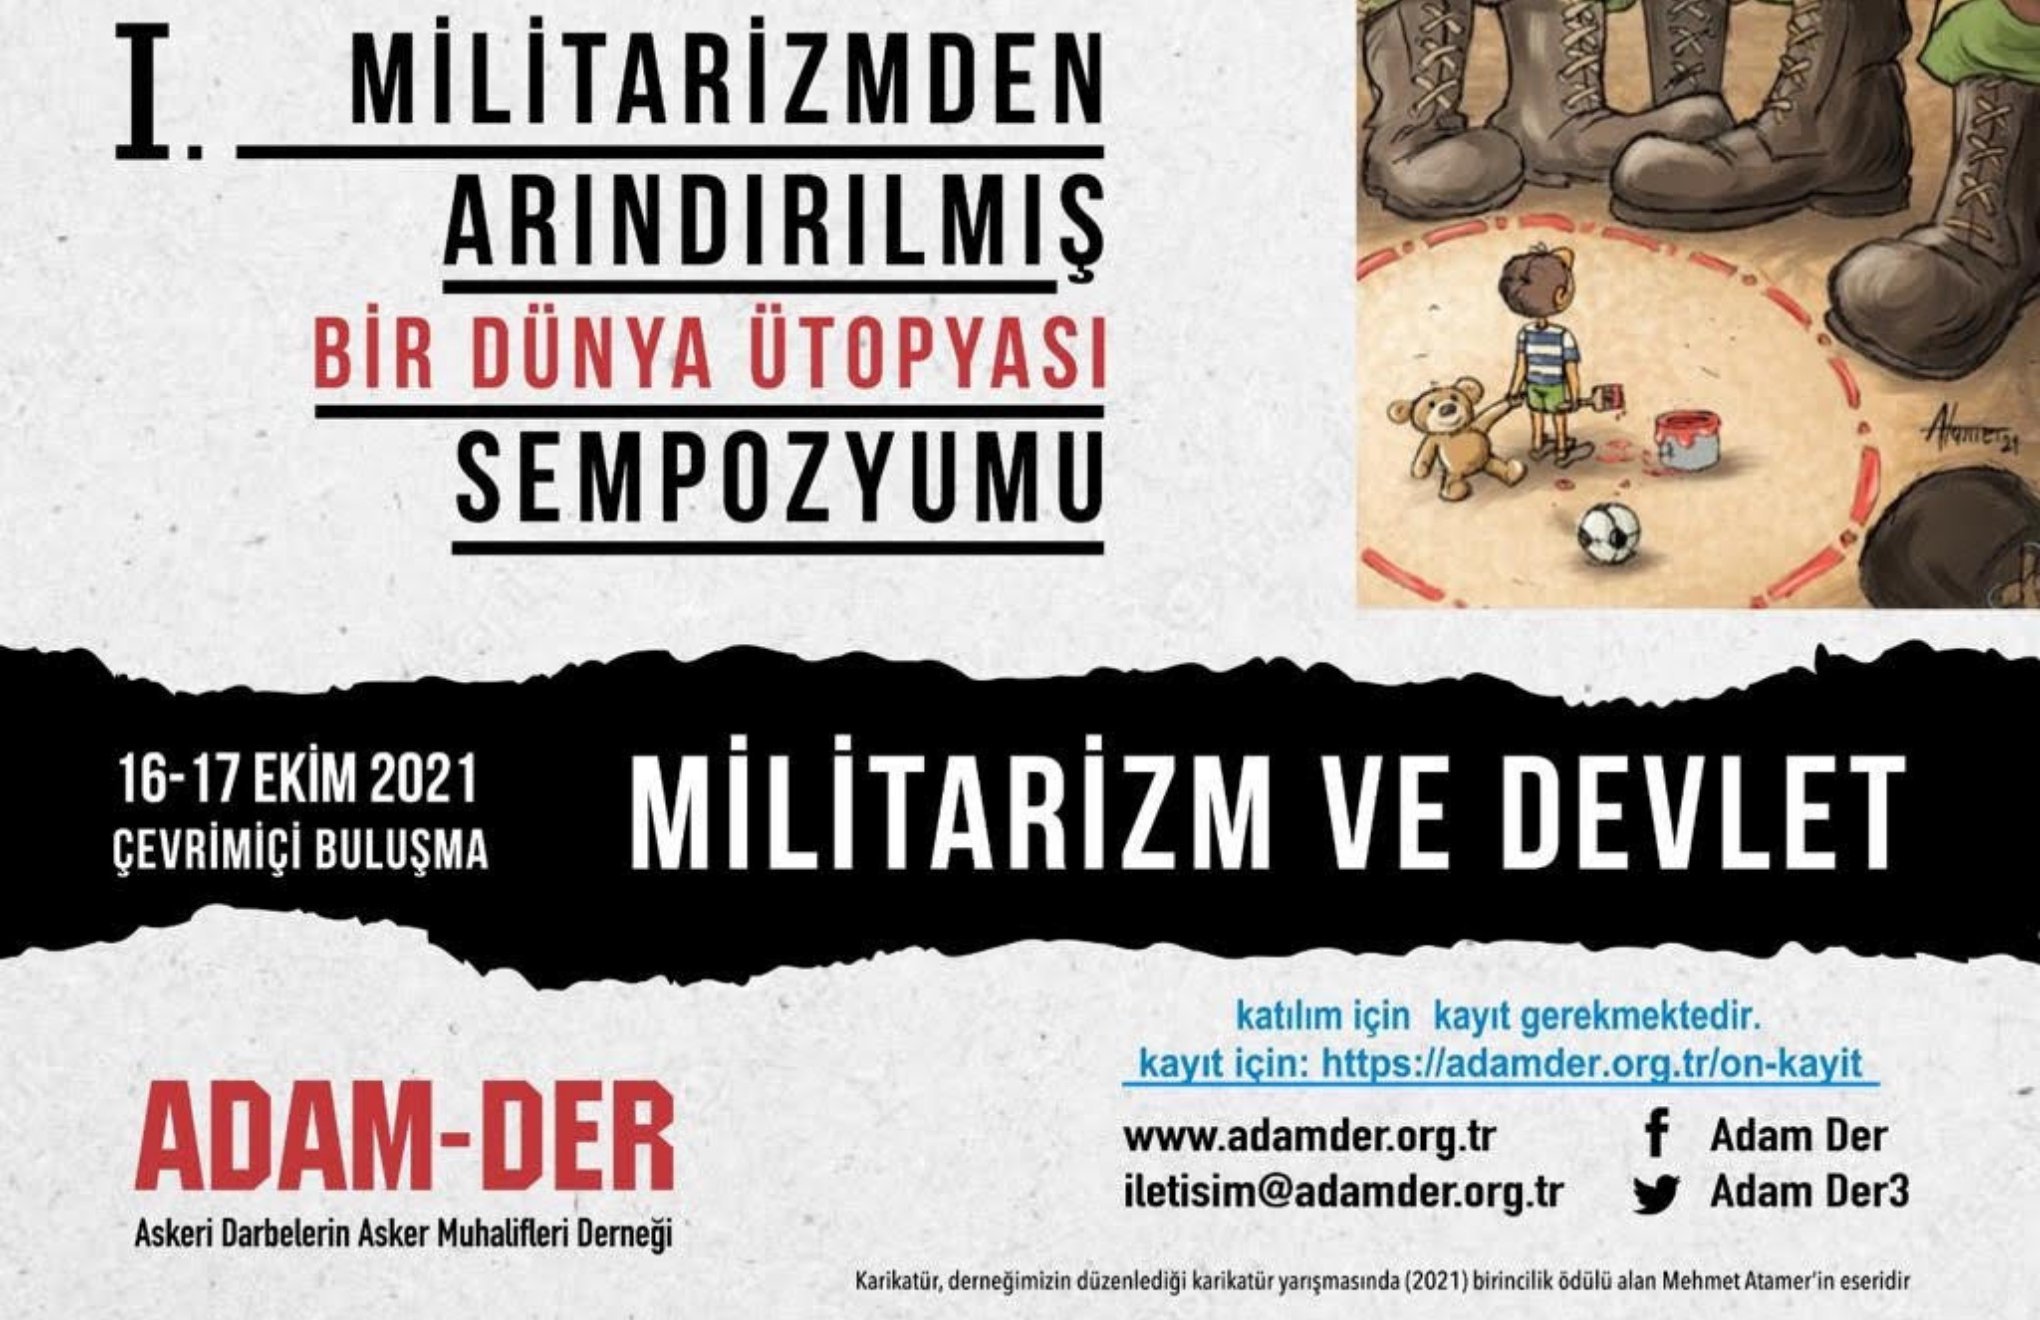 ADAM-DER’den militarizme karşı çevrimiçi buluşma